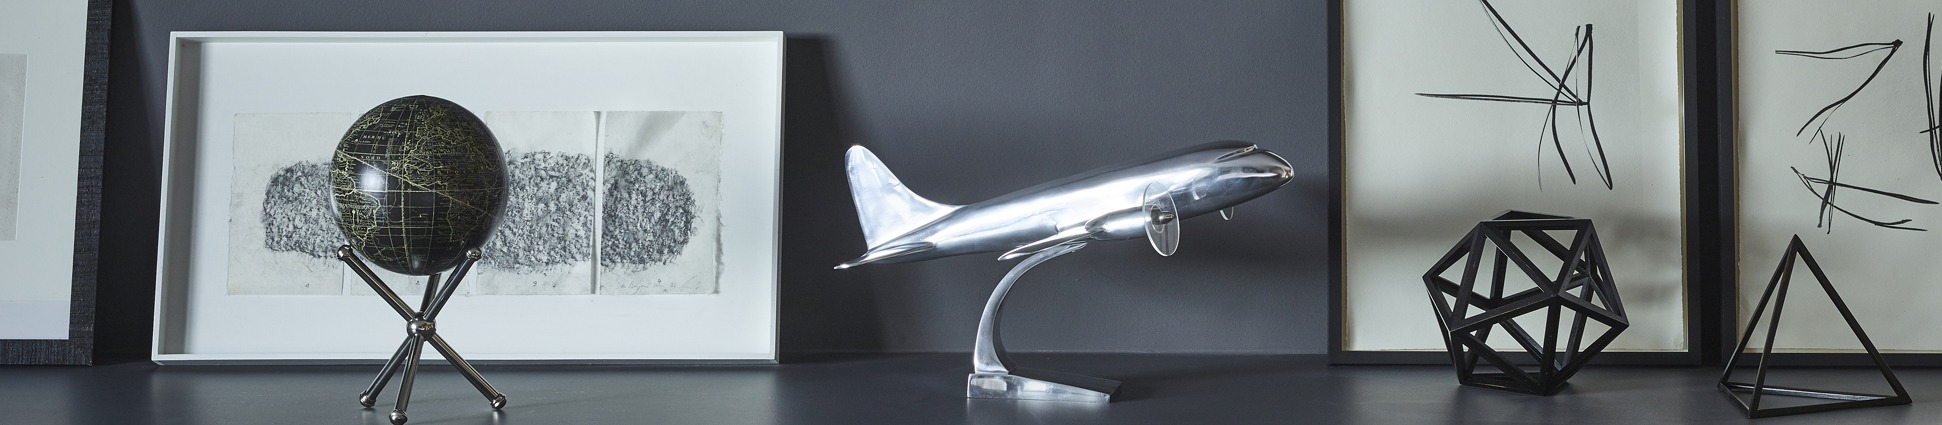 Schreibtisch-Flugzeugmodelle